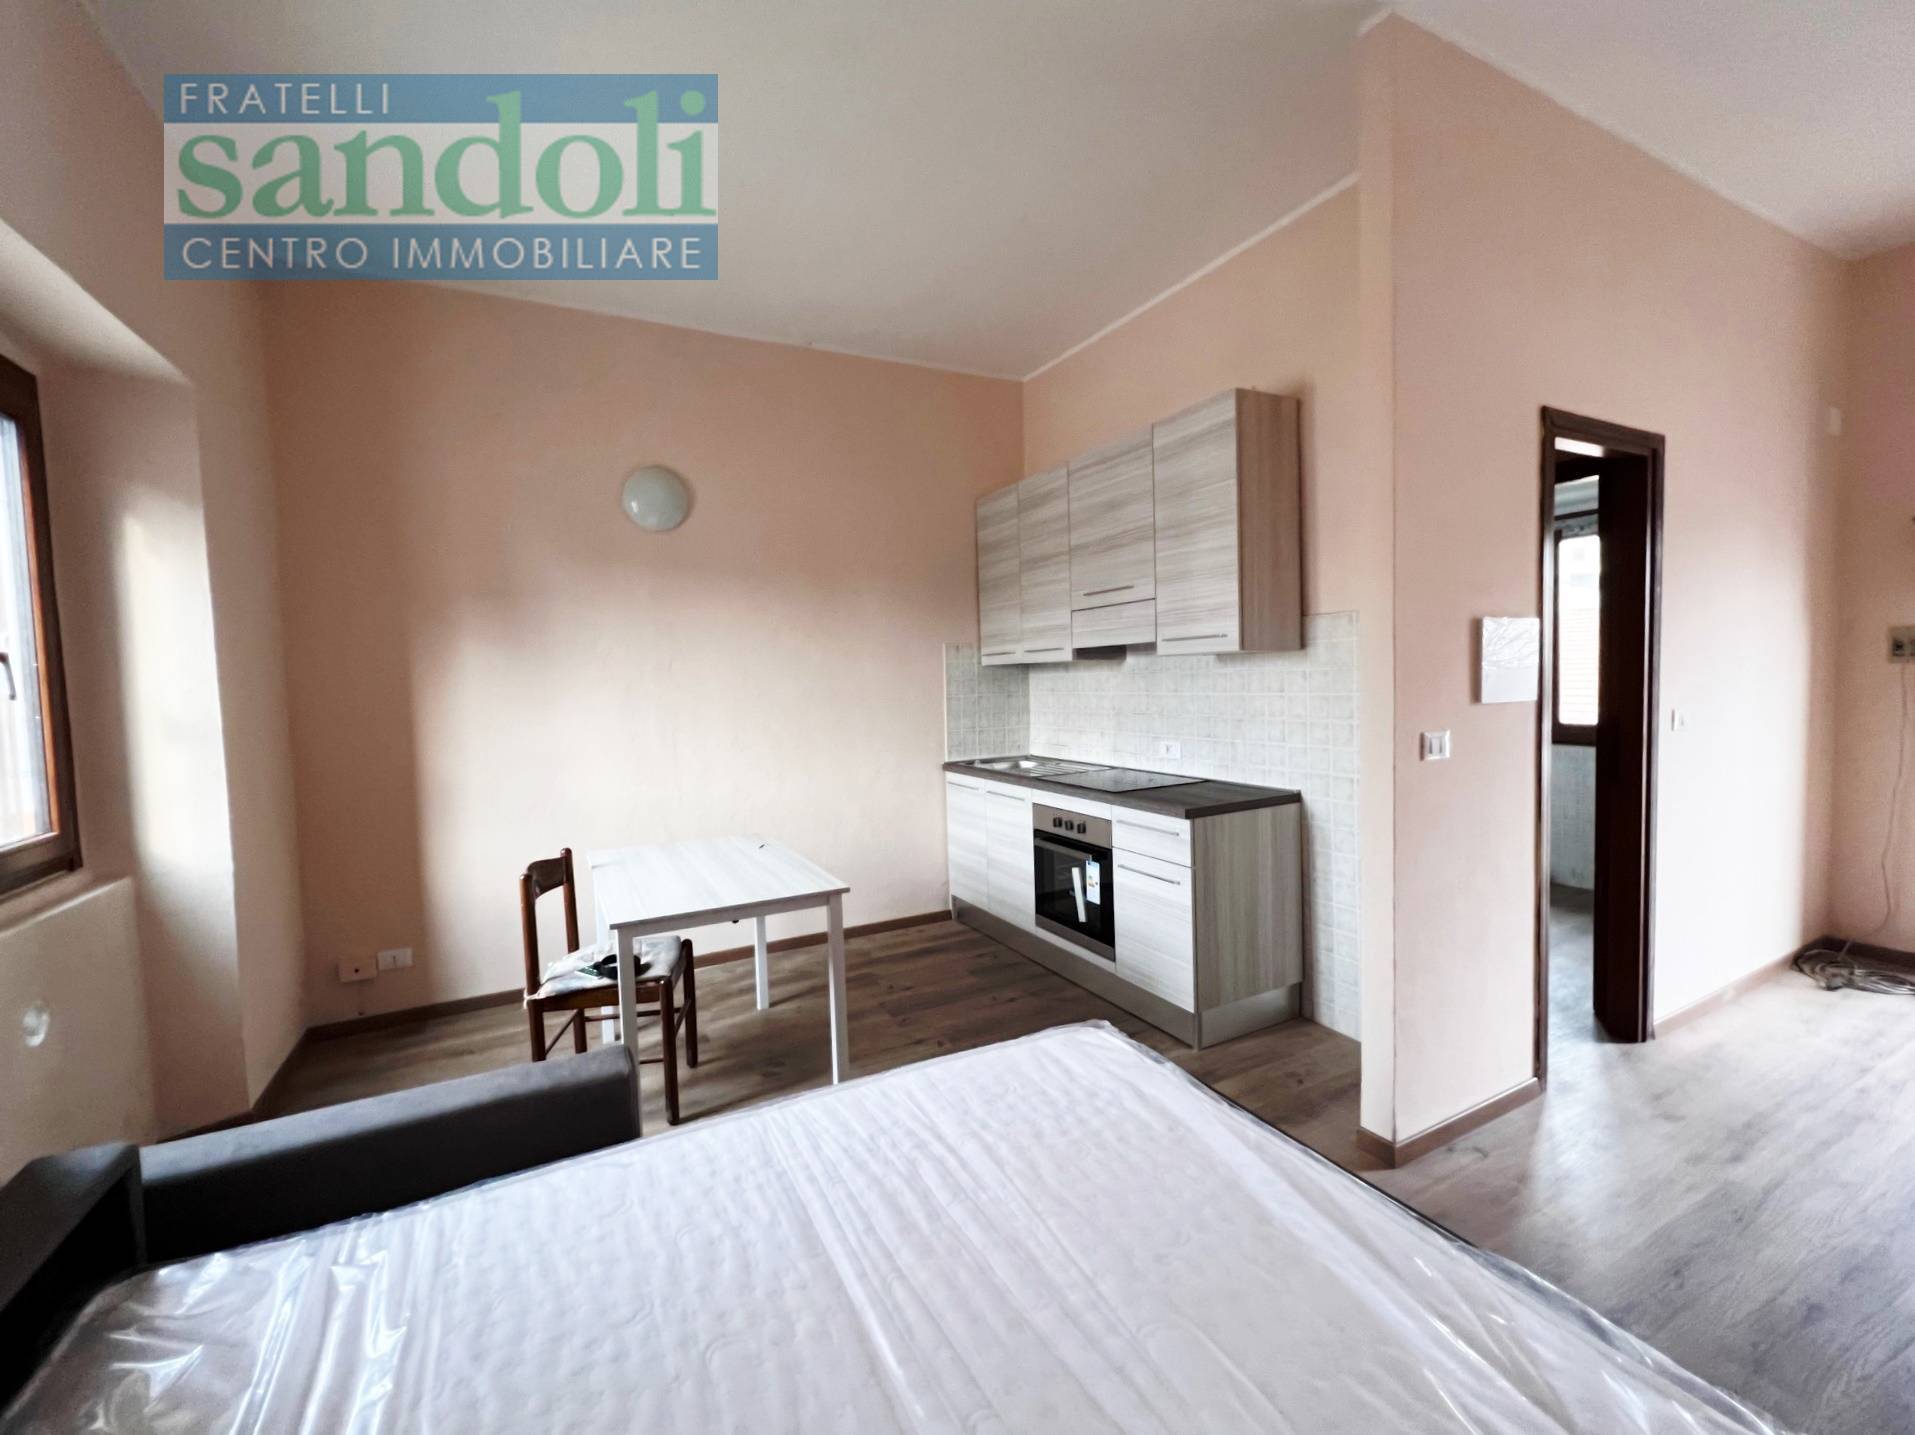 Appartamento in affitto a Vercelli, 1 locali, zona Località: PortaCasale, Trattative riservate | PortaleAgenzieImmobiliari.it